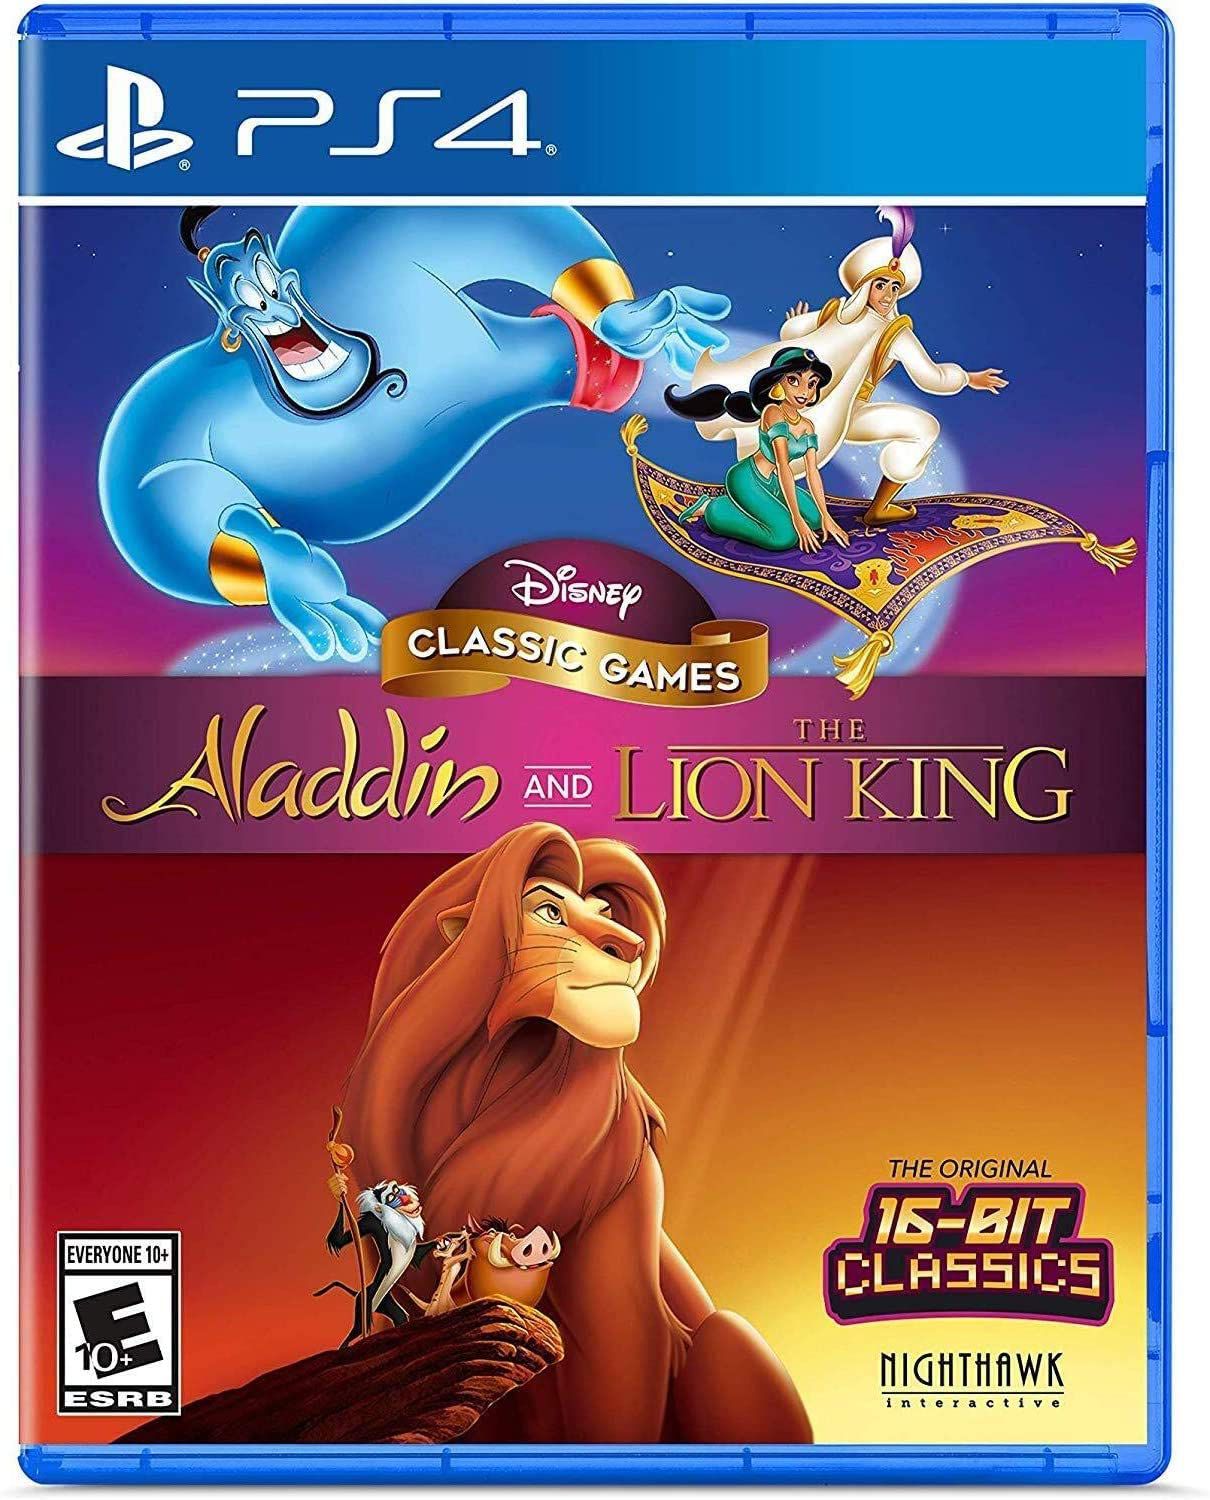 Jogos do Rei Leão, Aladdin e O Livro da Selva chegam ao GOG